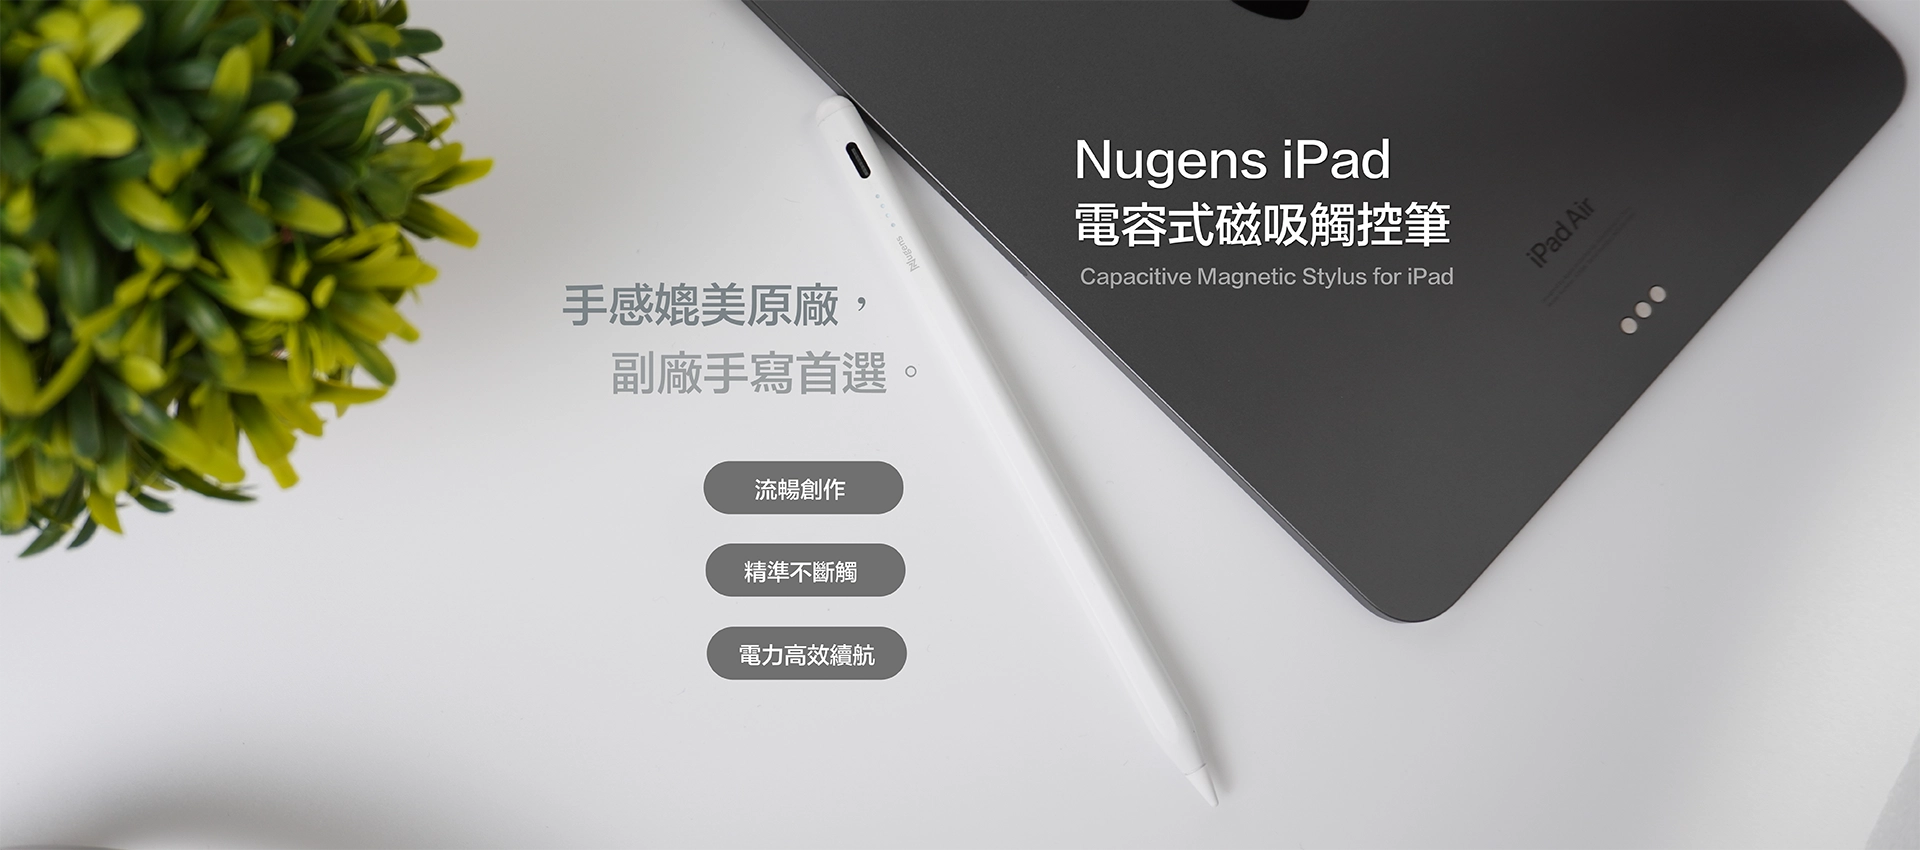 Nugens iPad 電容式磁吸觸控筆Banner-電腦版